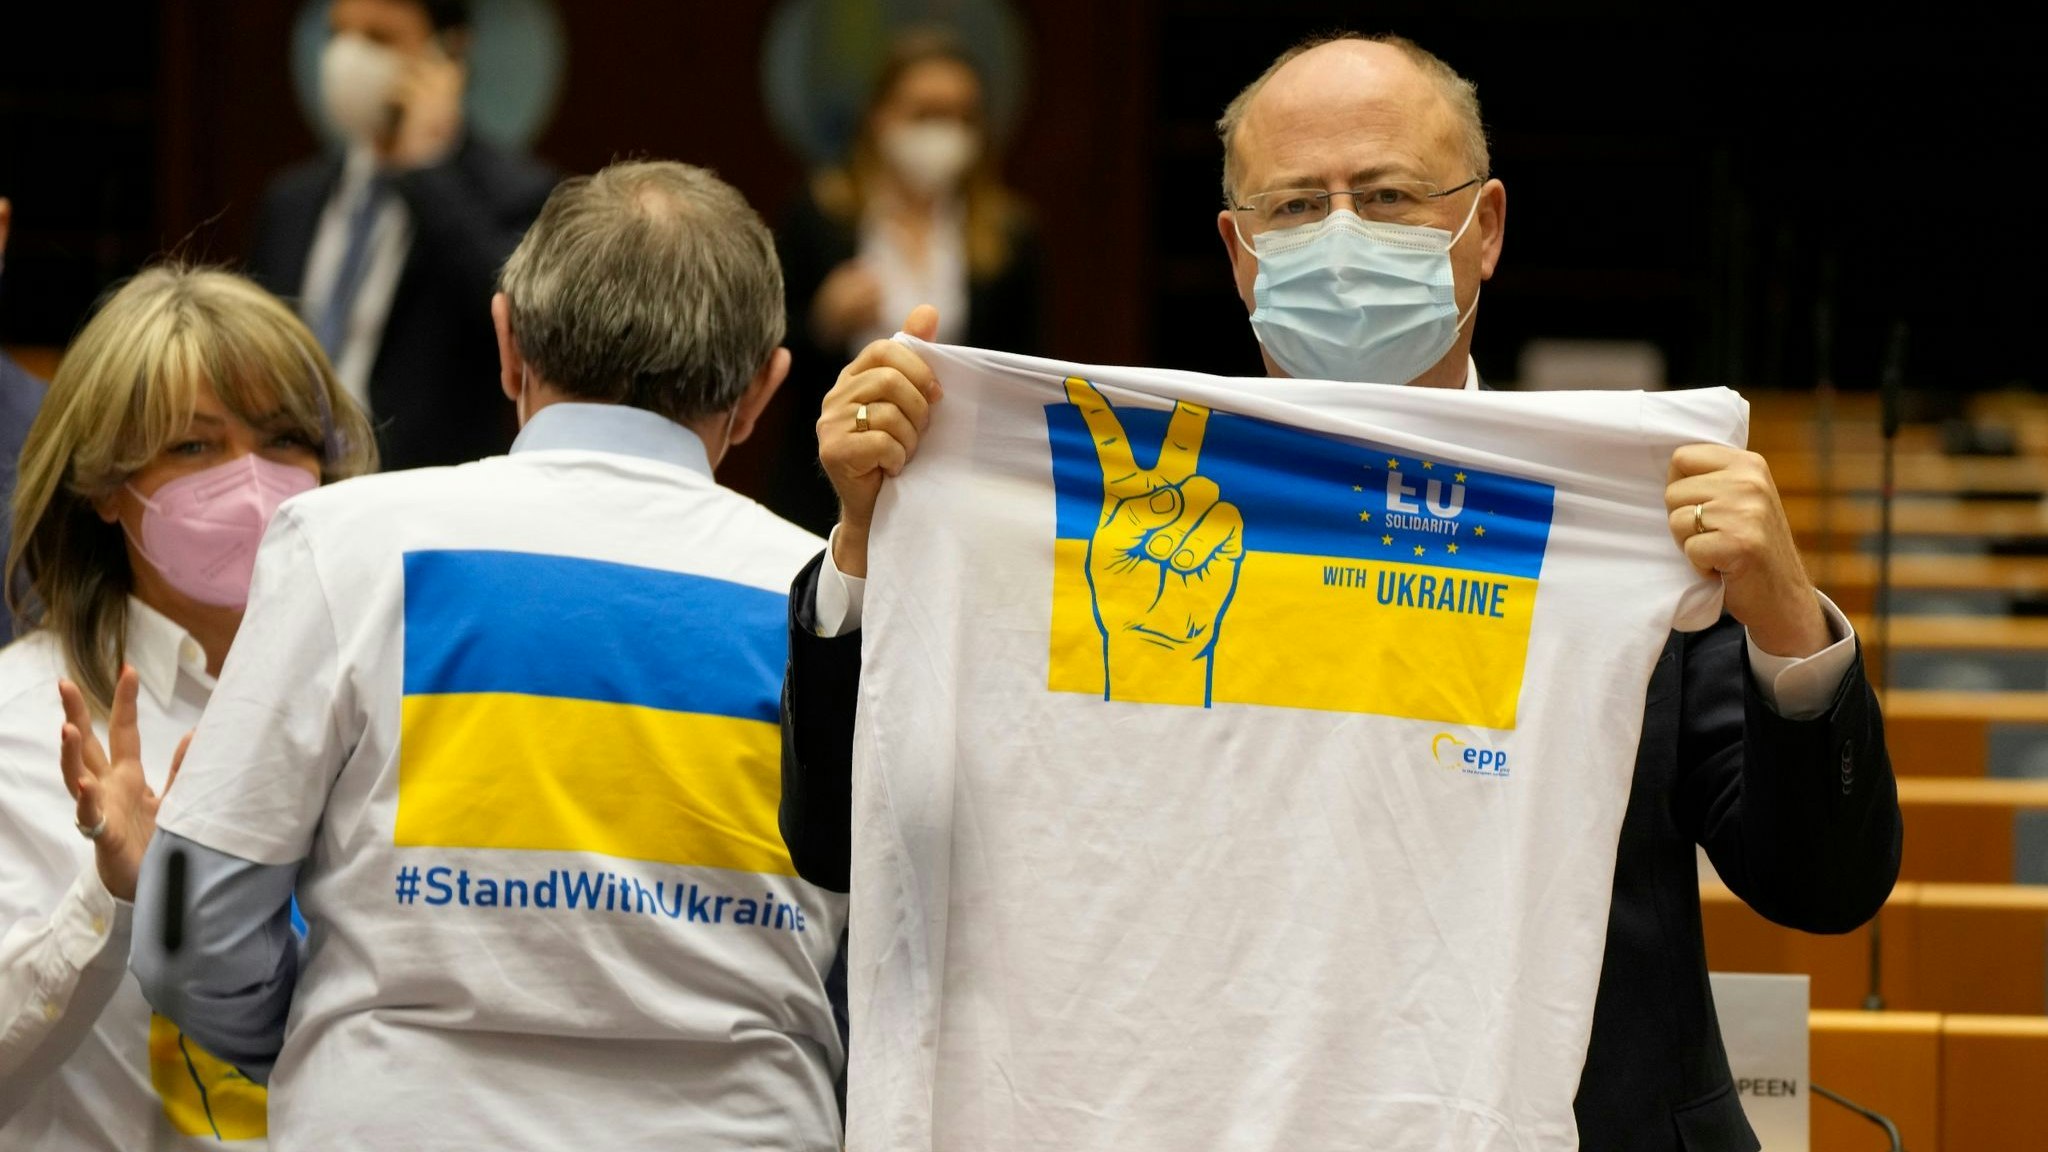 Ein Mitglied des Europäischen Parlaments hält ein T-Shirt in den Farben Blau und Gelb zur Unterstützung der Ukraine. Foto: Mayo